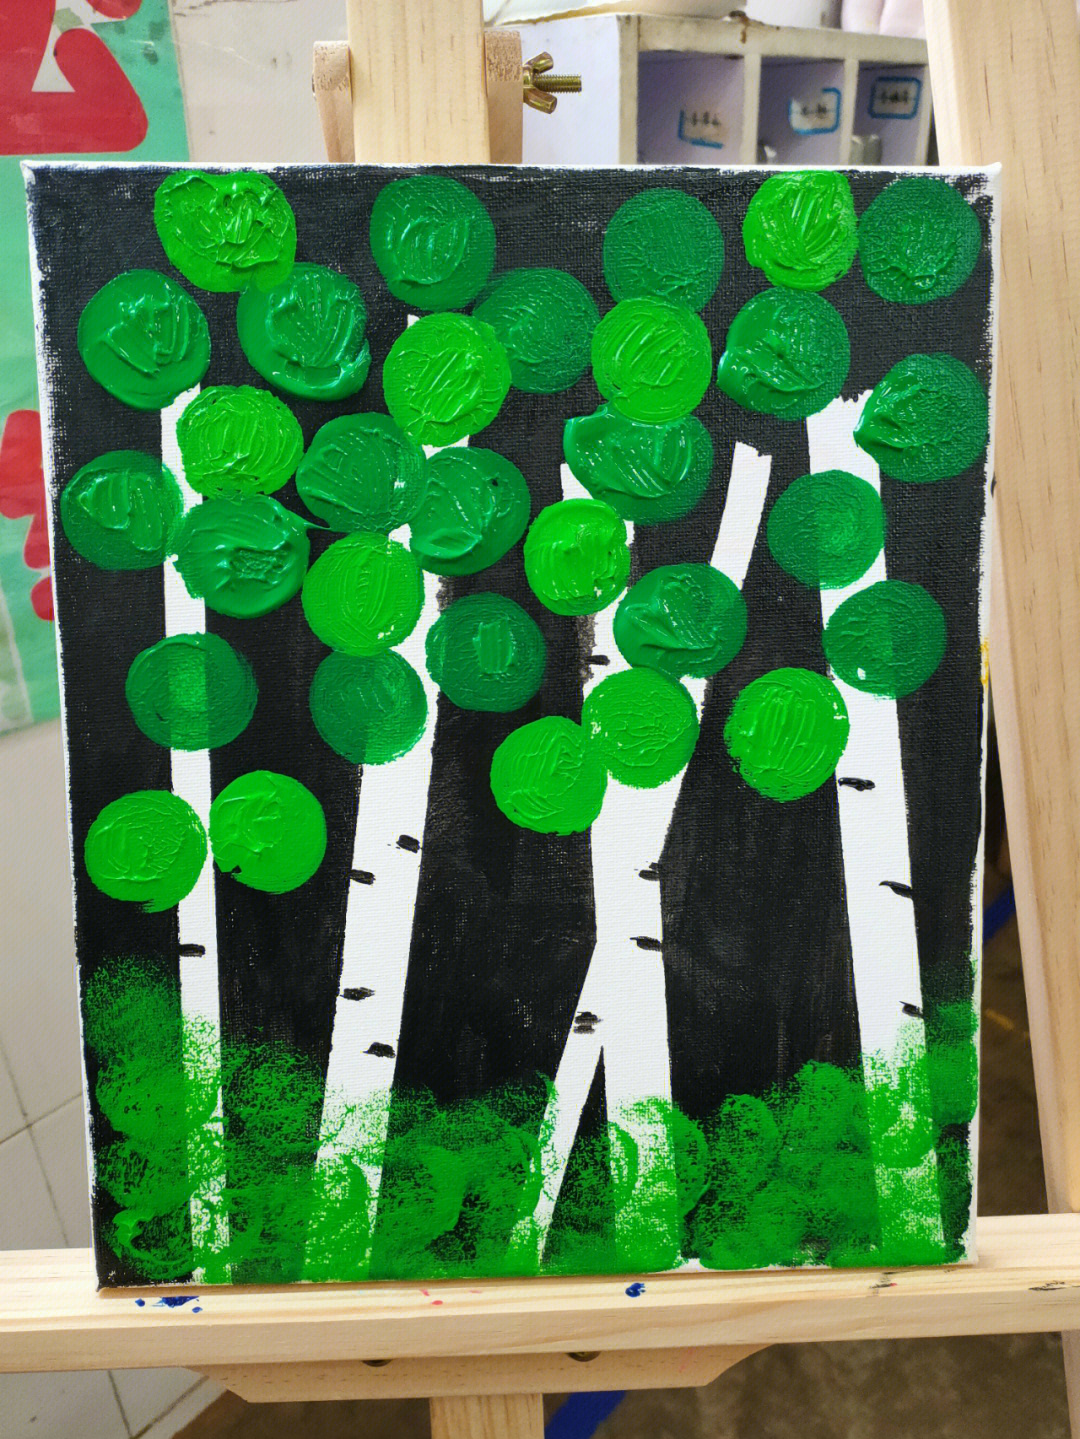 幼儿园绿色森林风主题图片